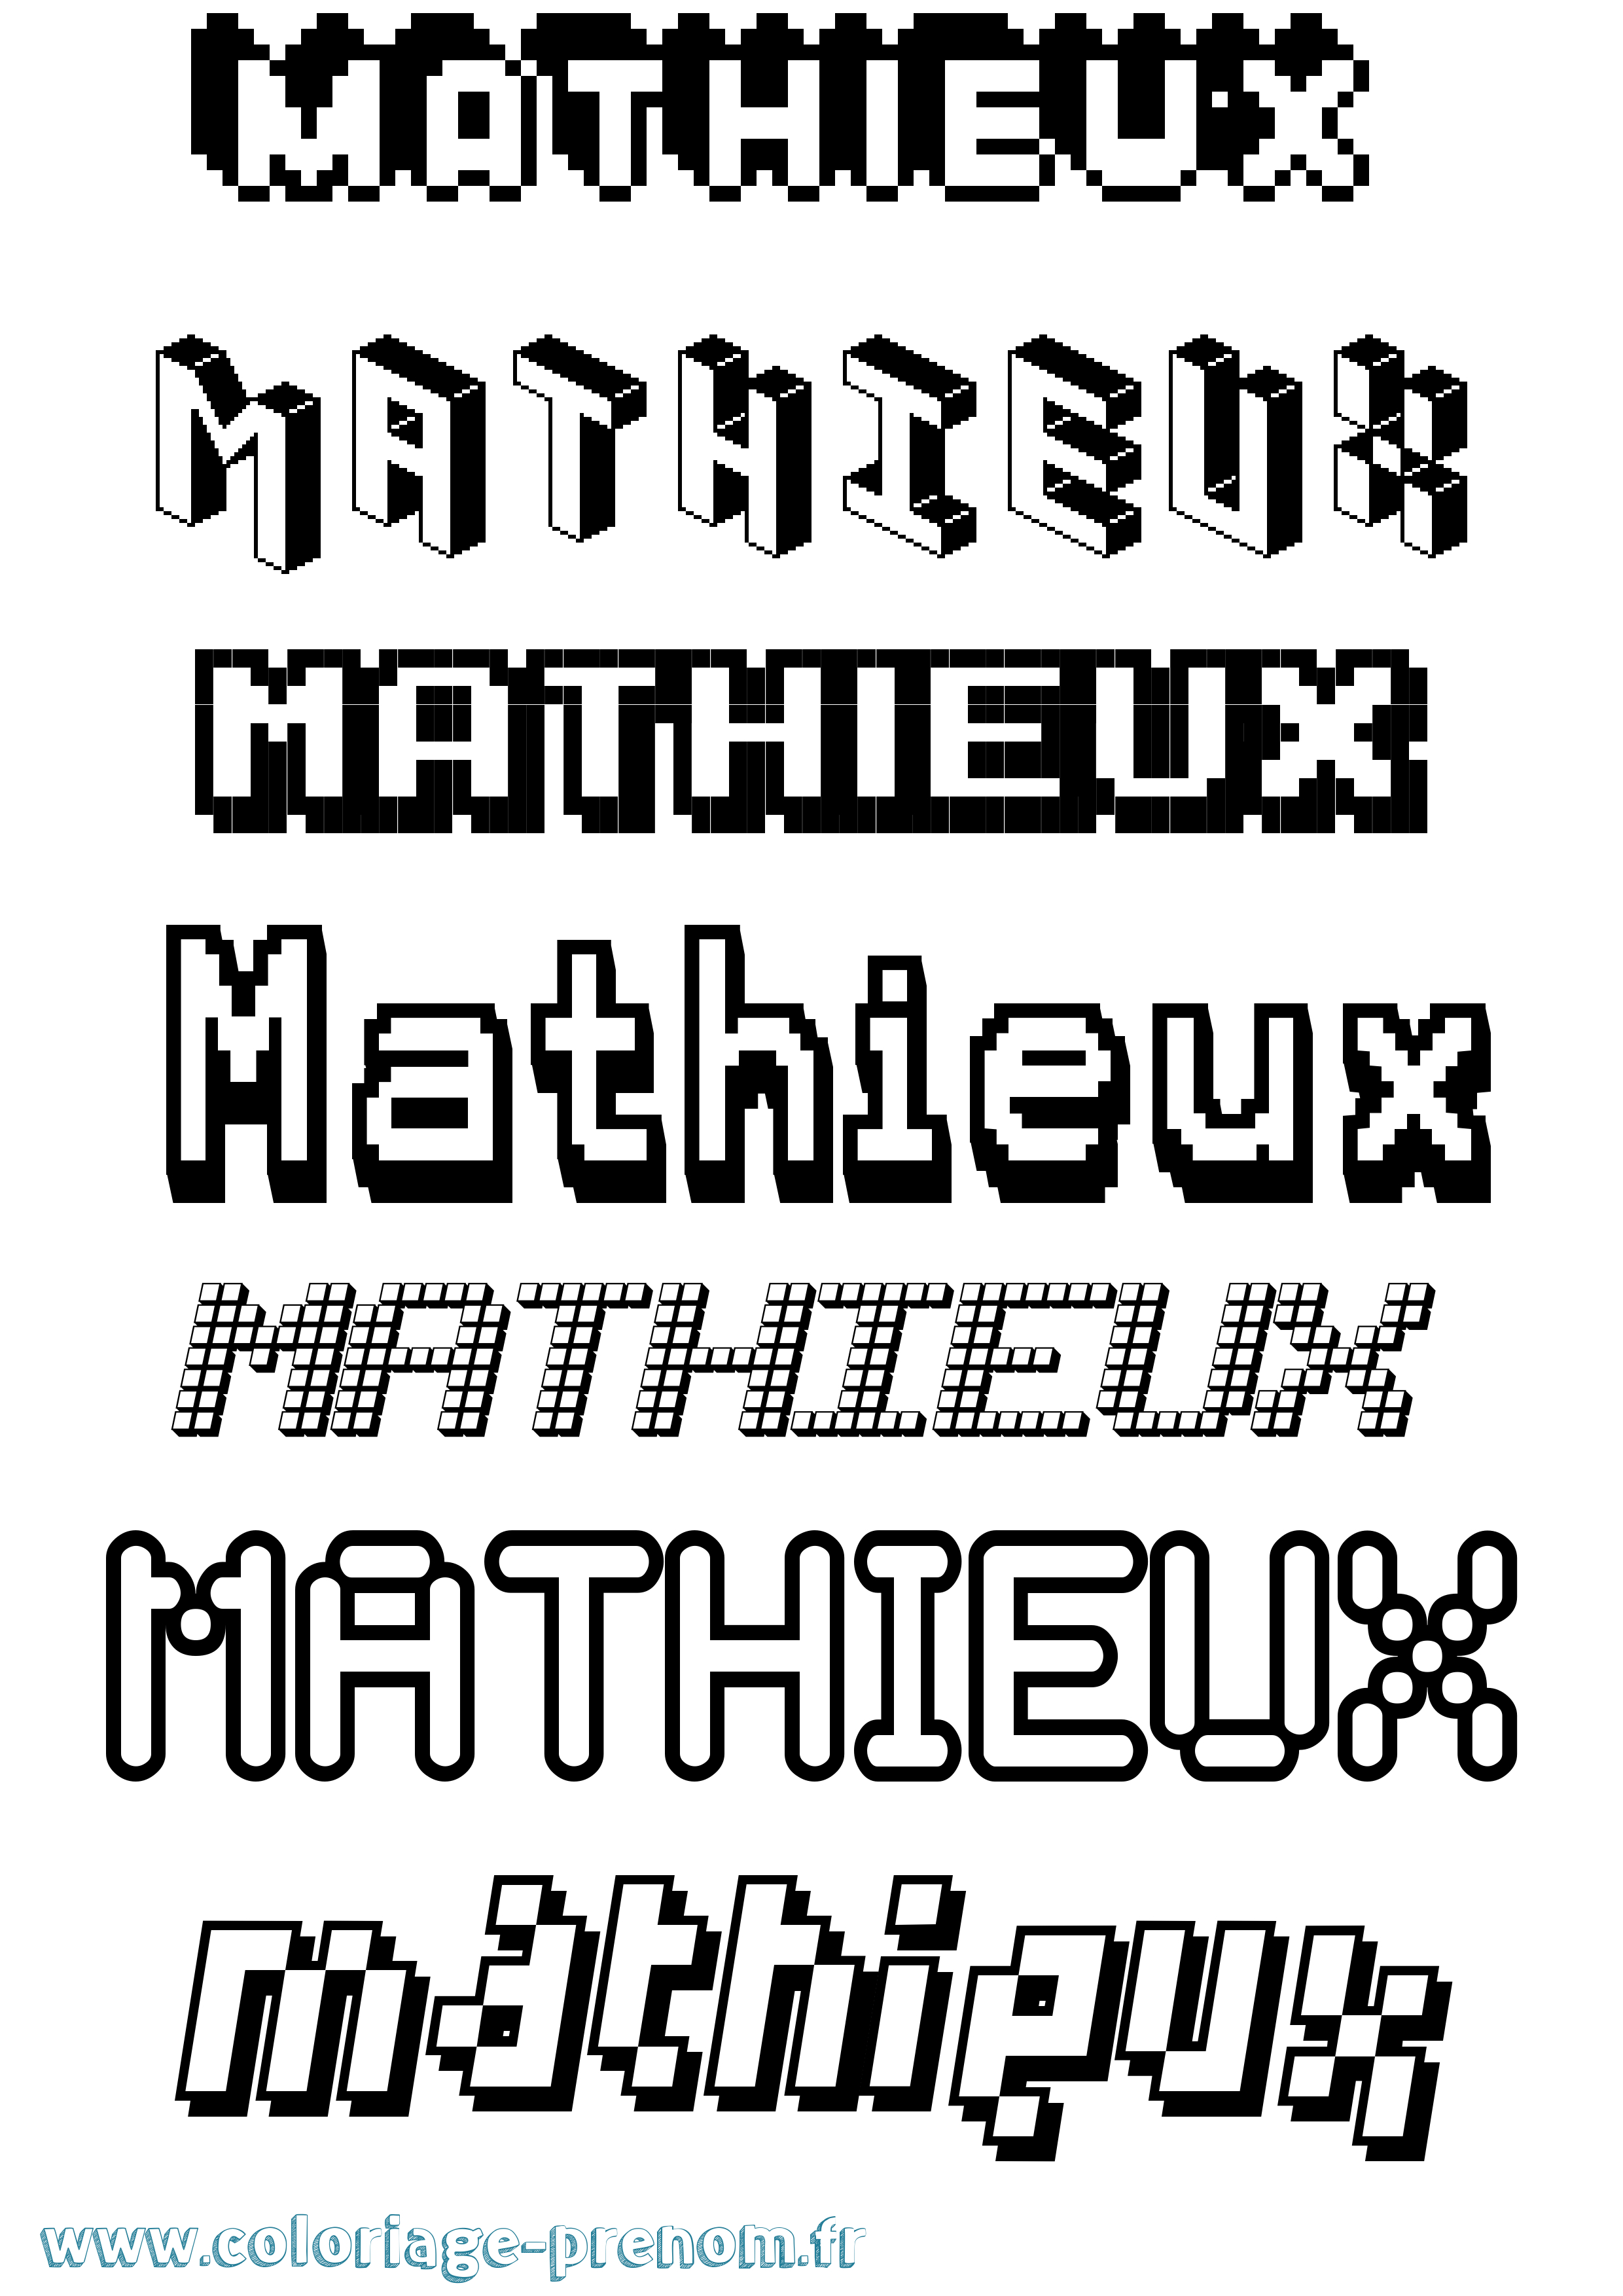 Coloriage prénom Mathieux Pixel